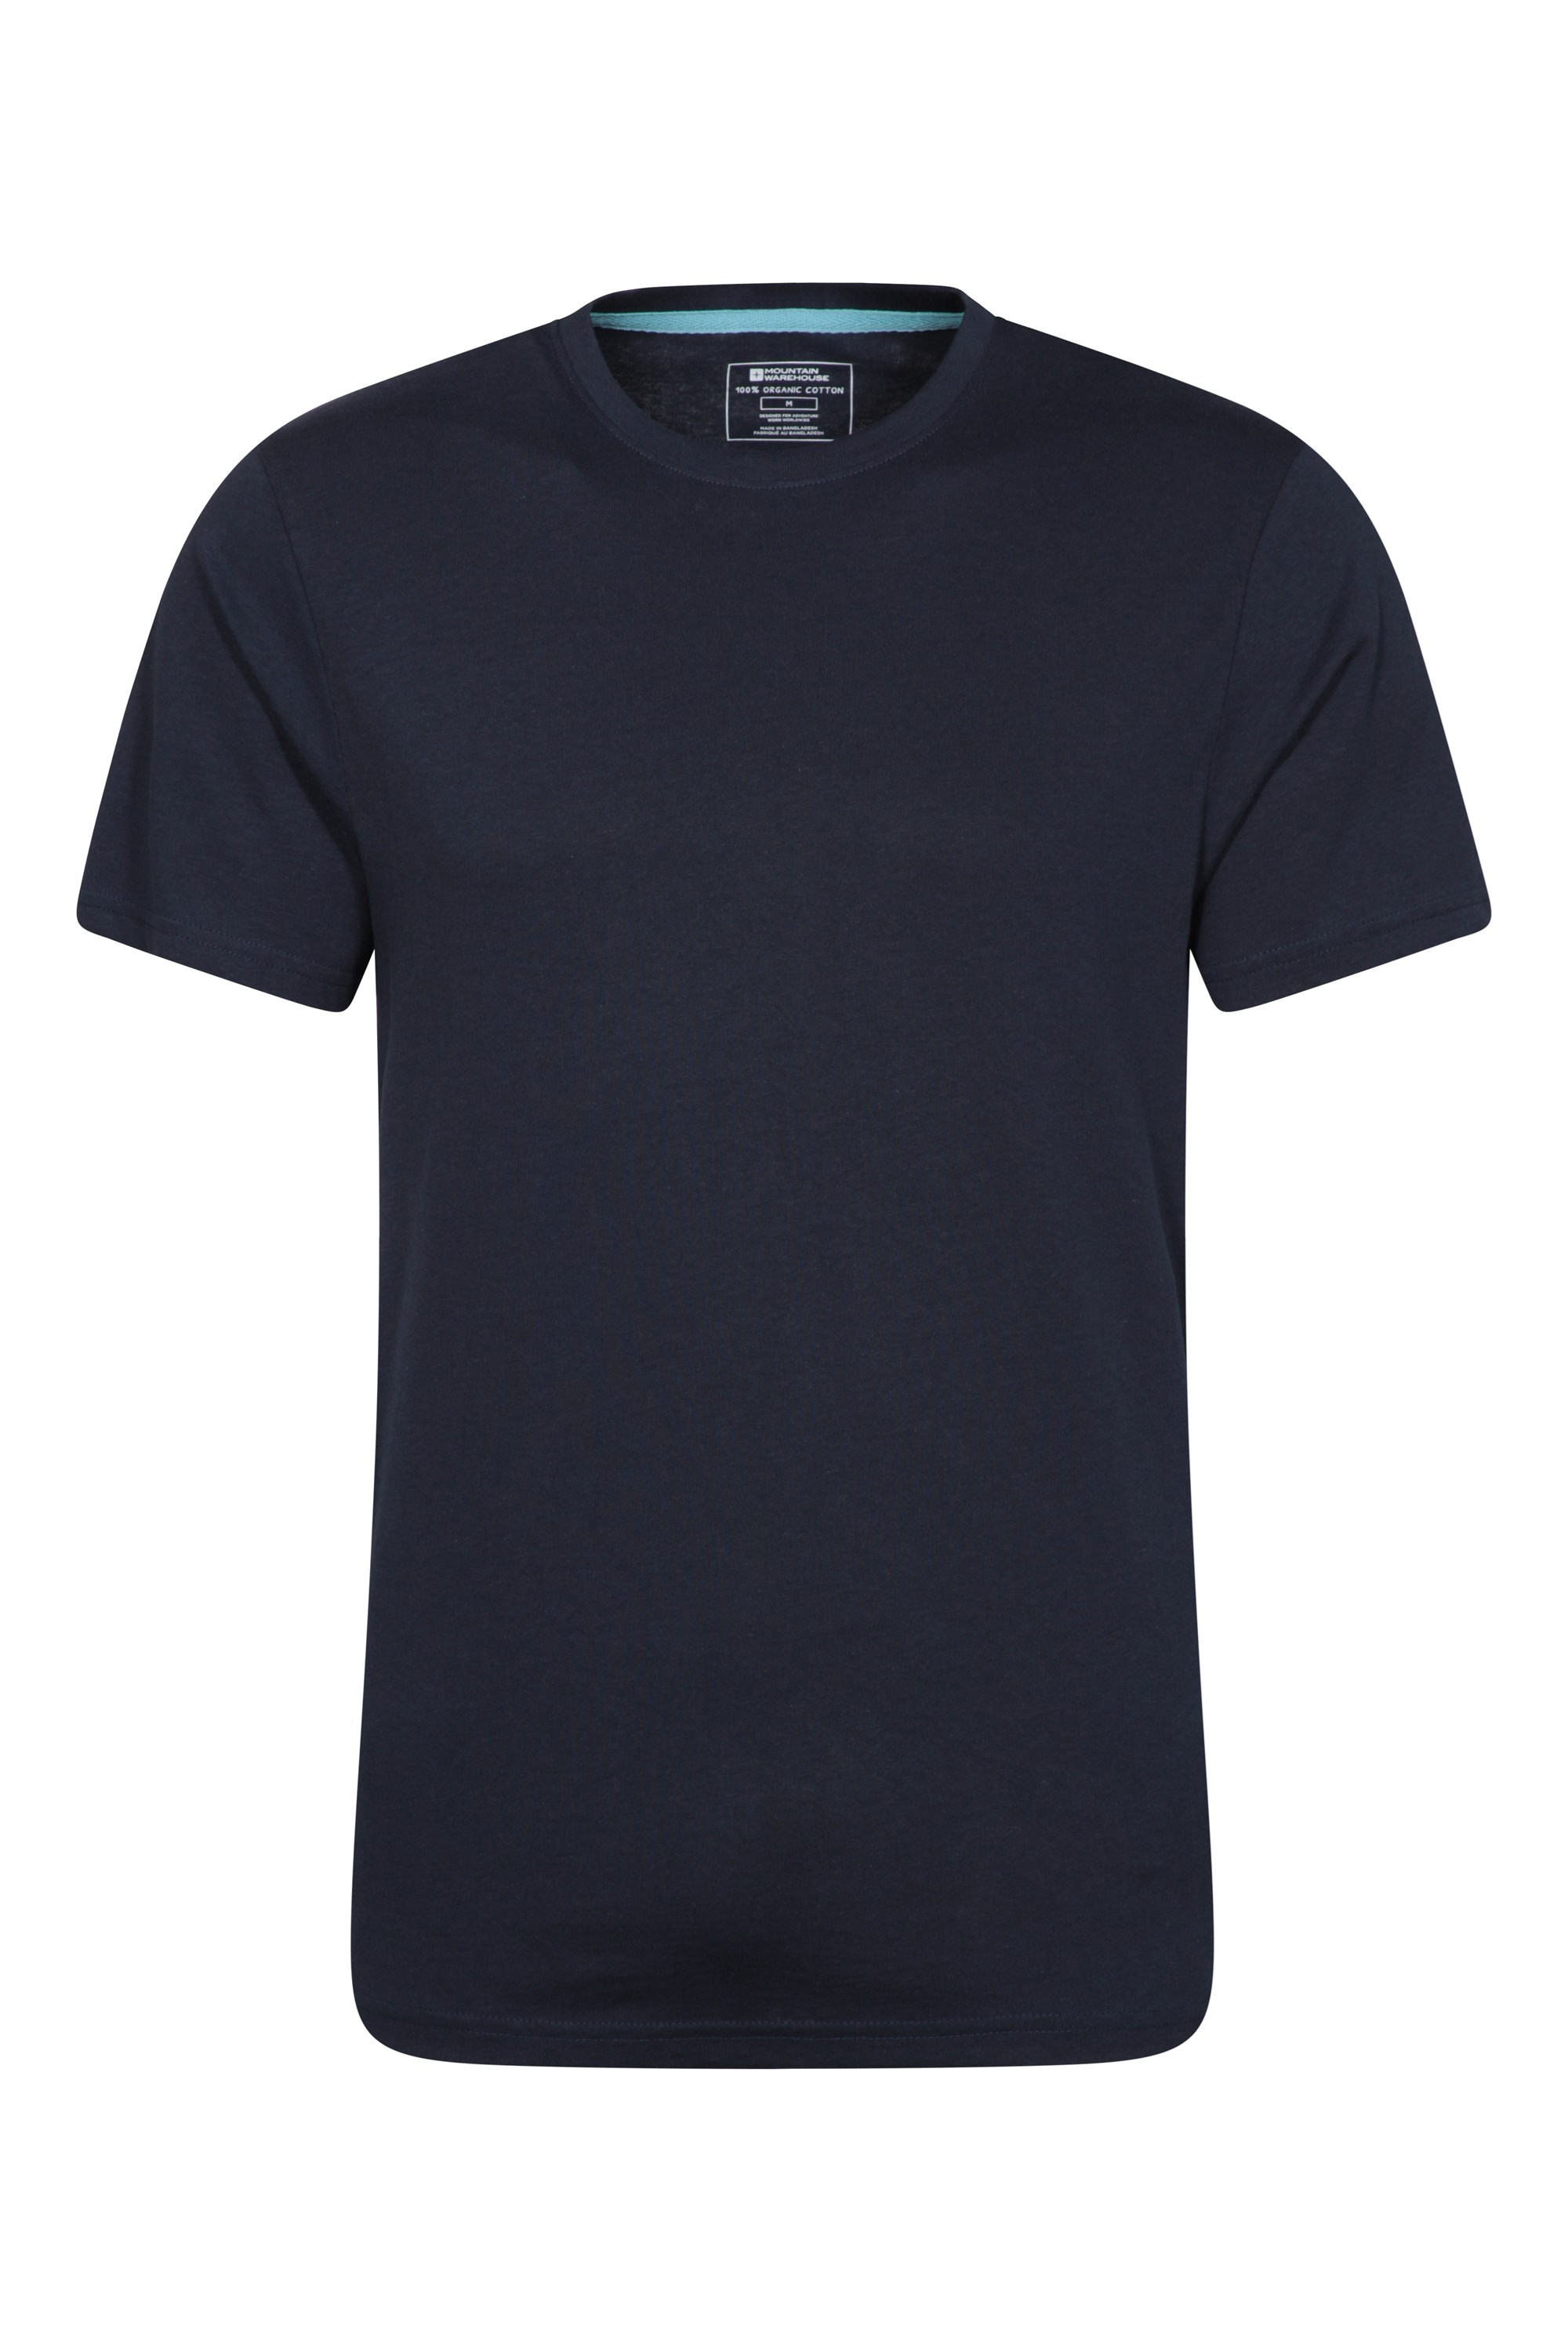 T-Shirt Eden Homme - Bleu Marine